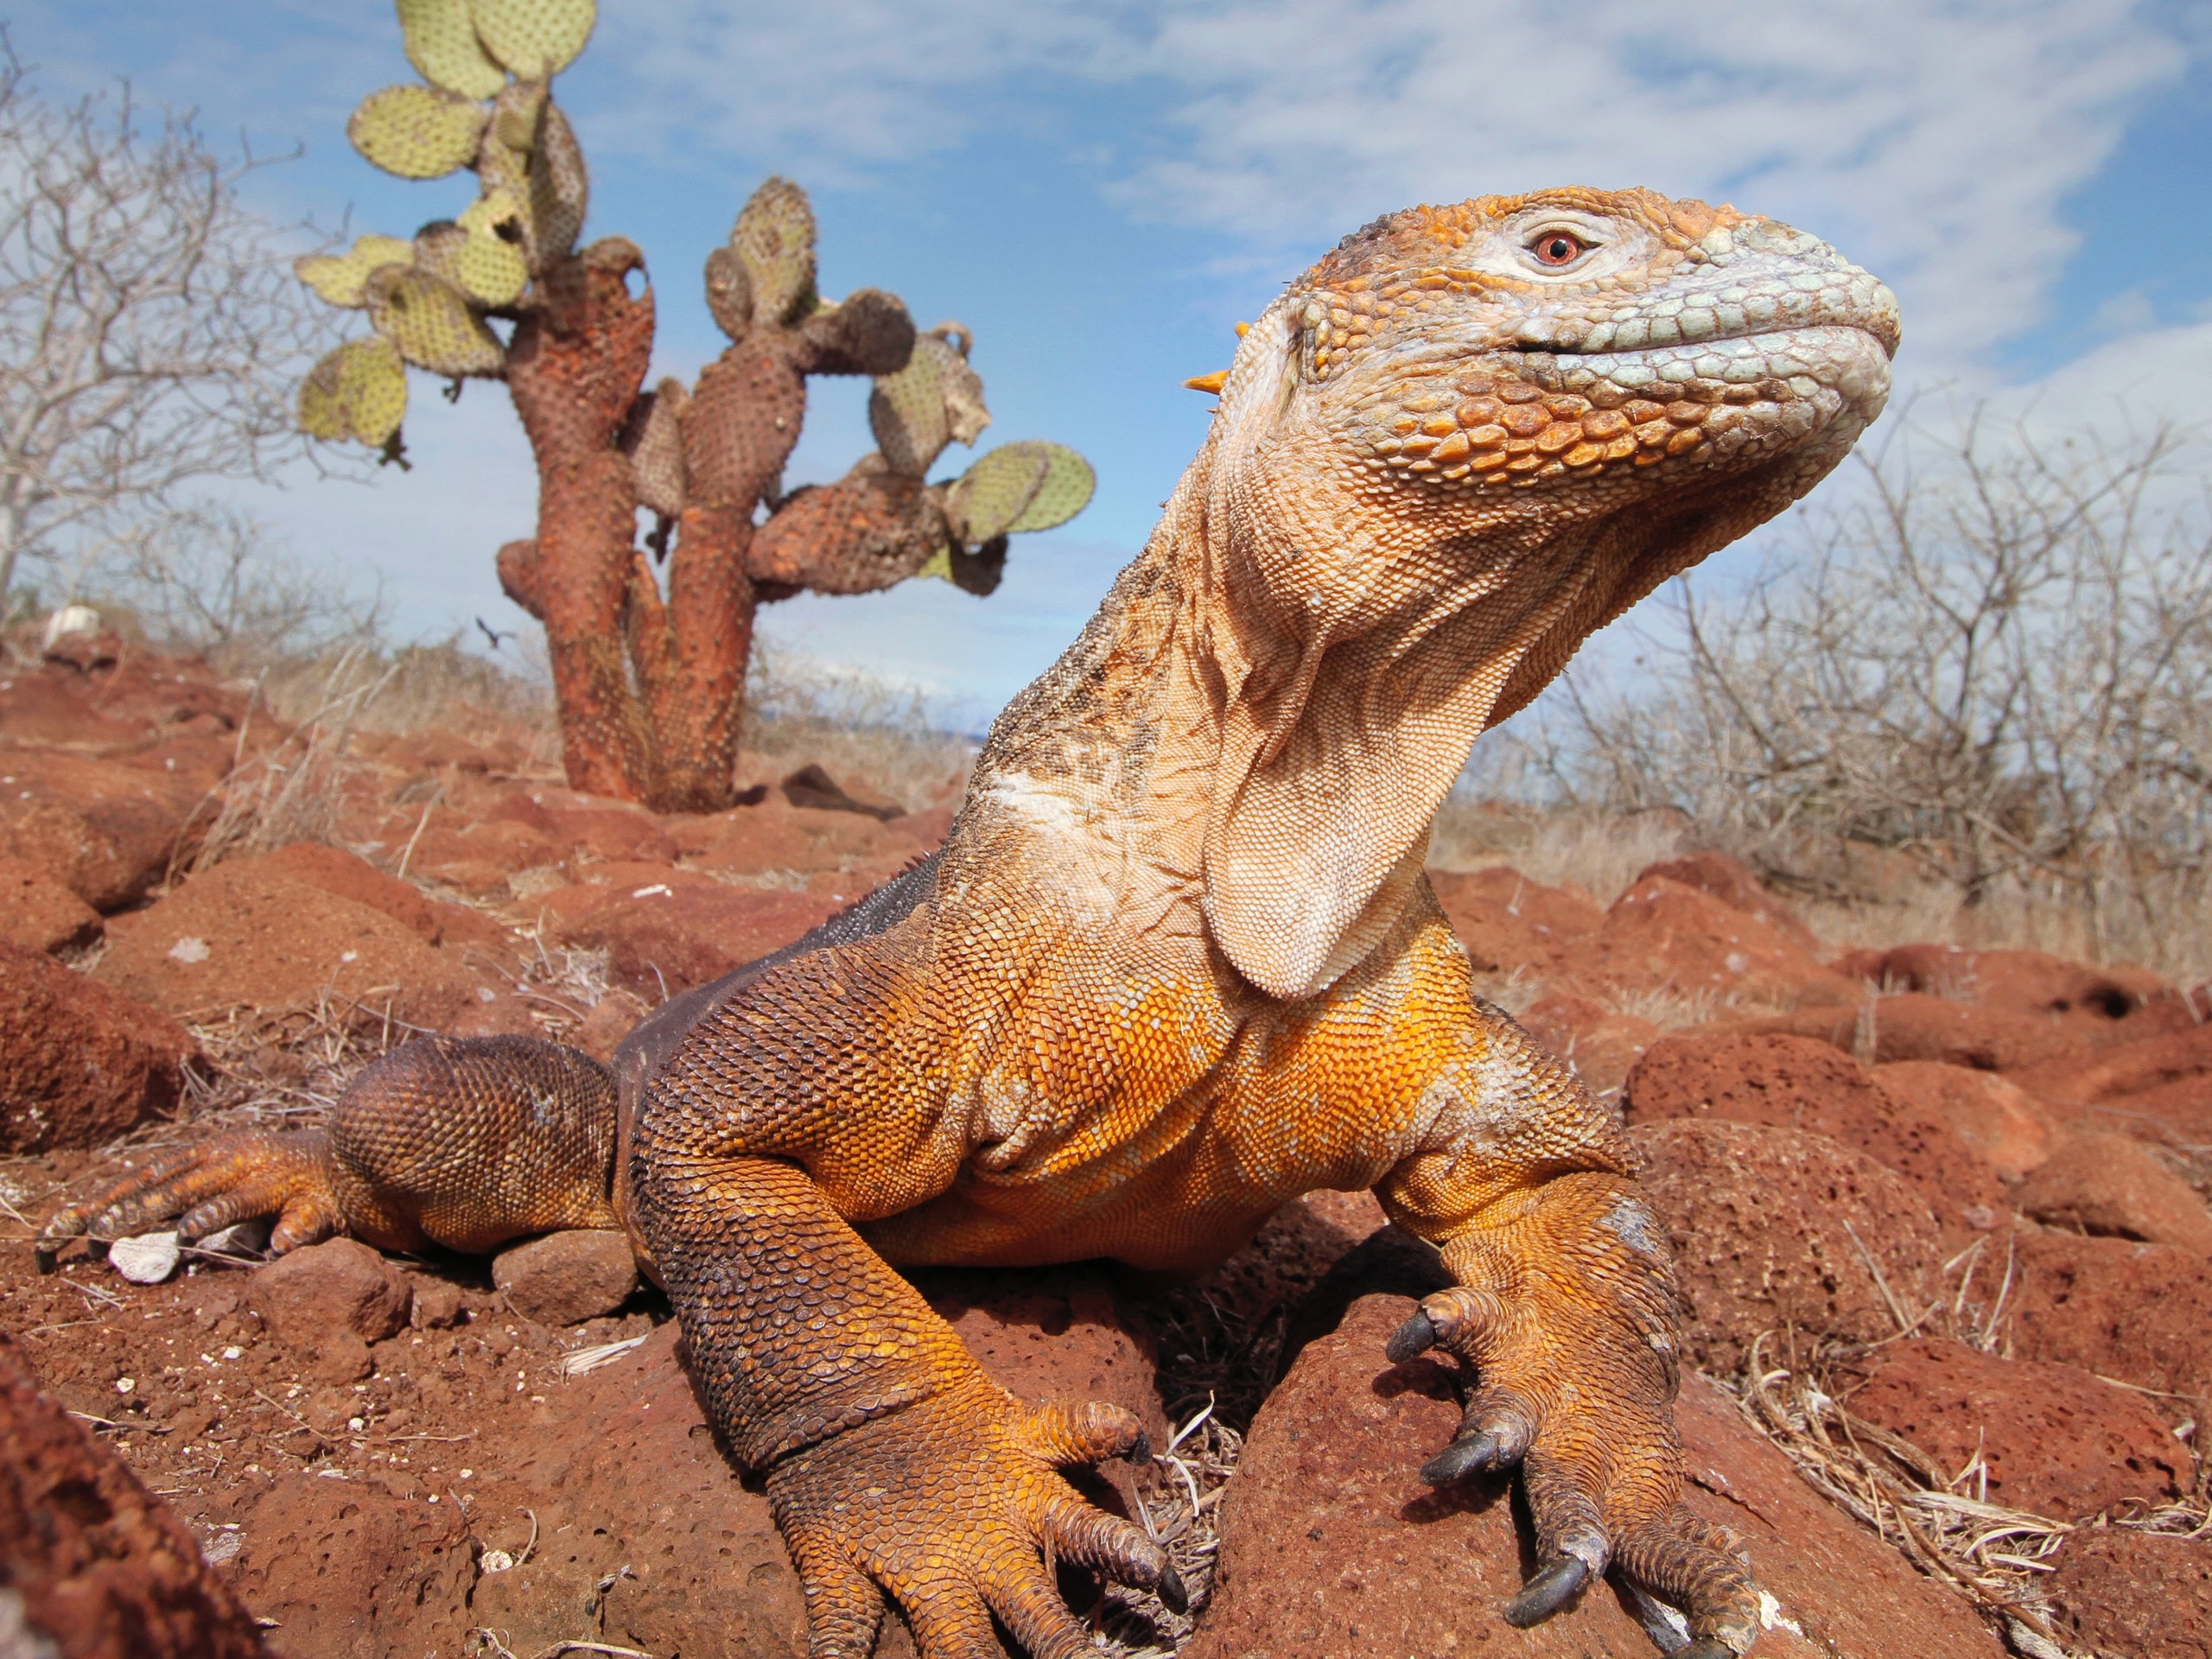 Lizard seen in Galapagos